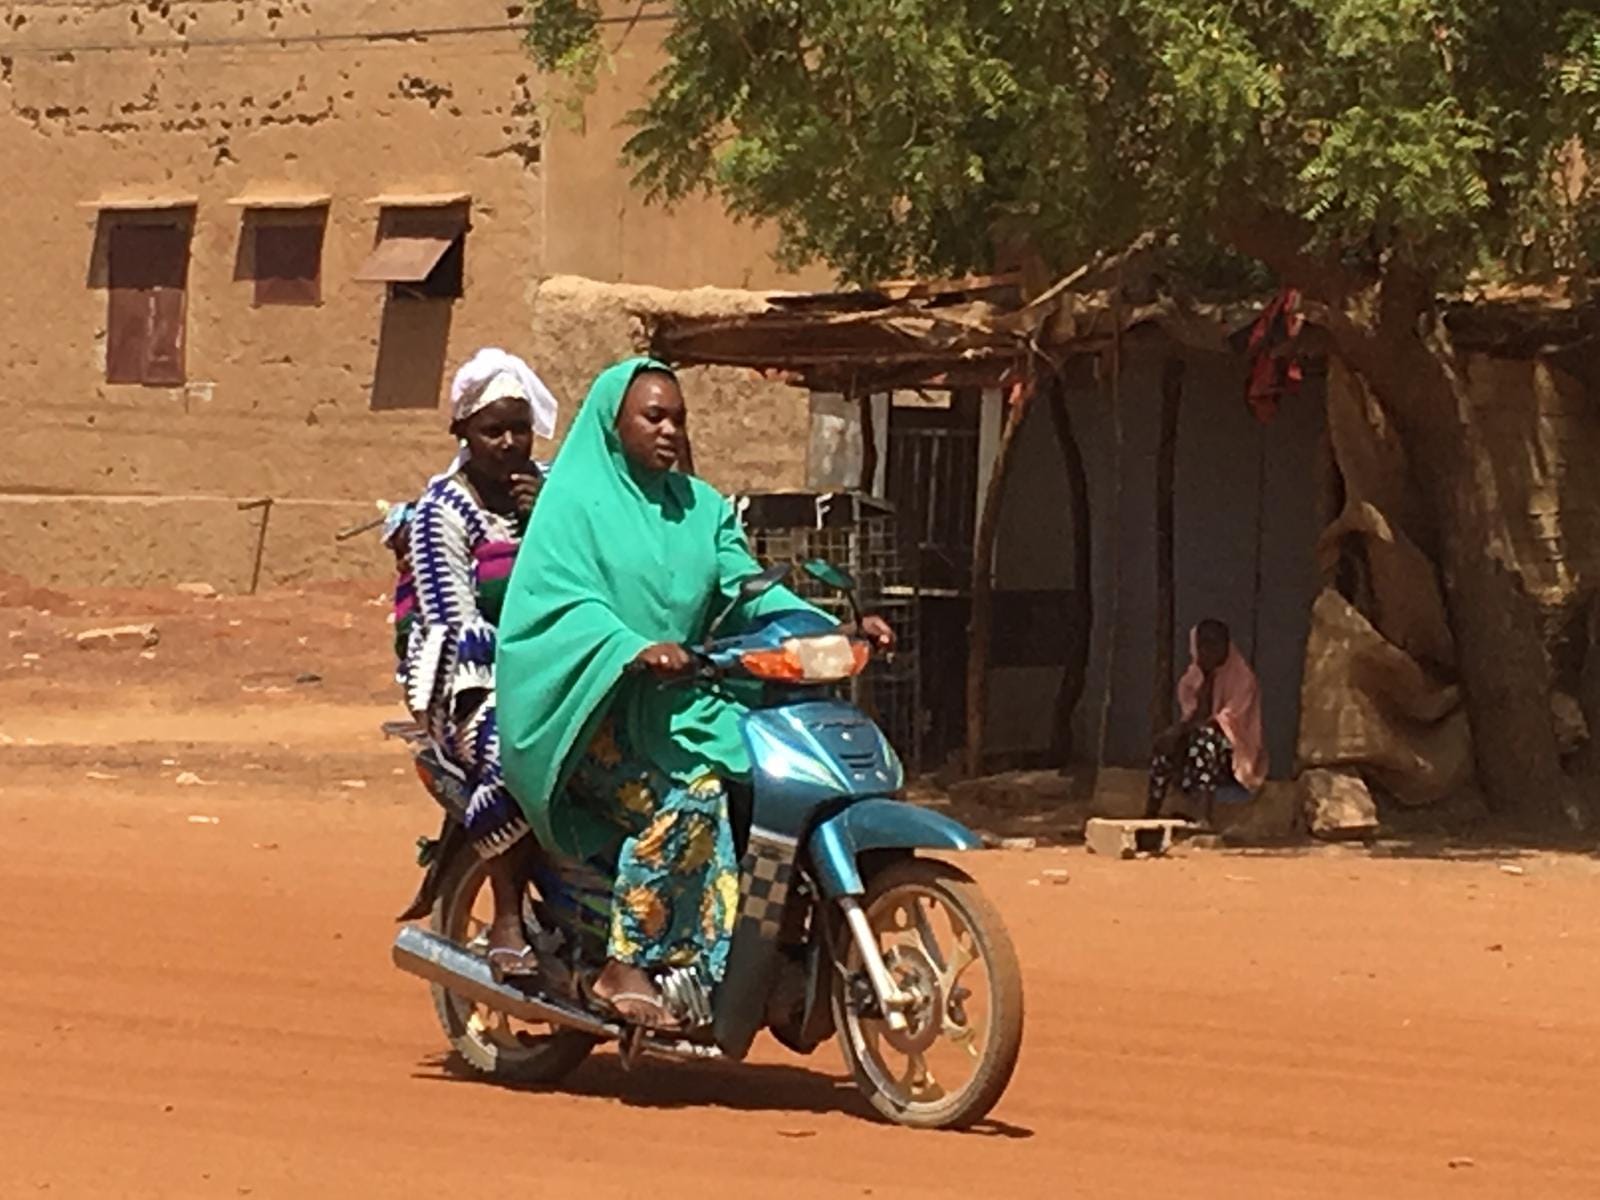 Beliebtes Fortbewegungsmittel und überall in Mali zu sehen: kleine Motorräder.